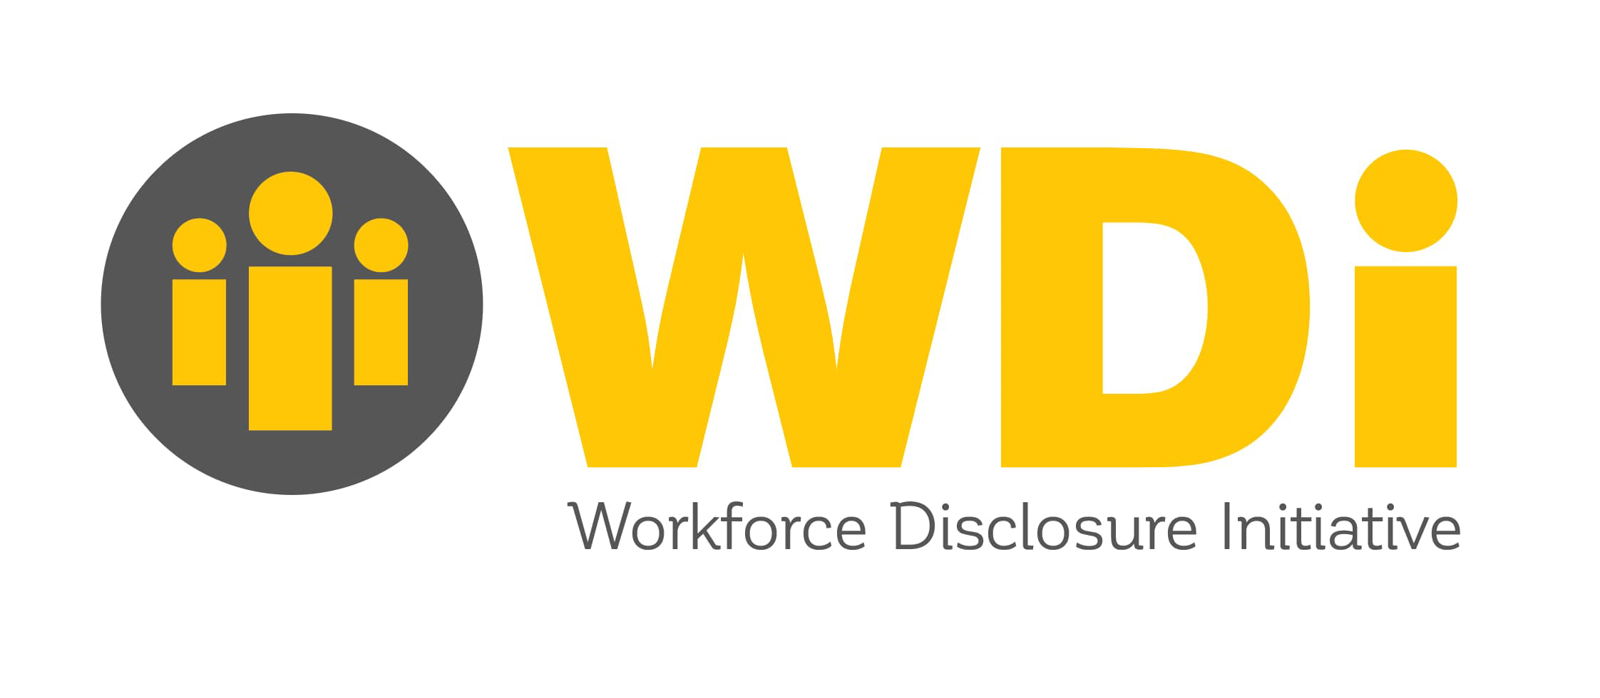 Workforce Disclosure Initiative